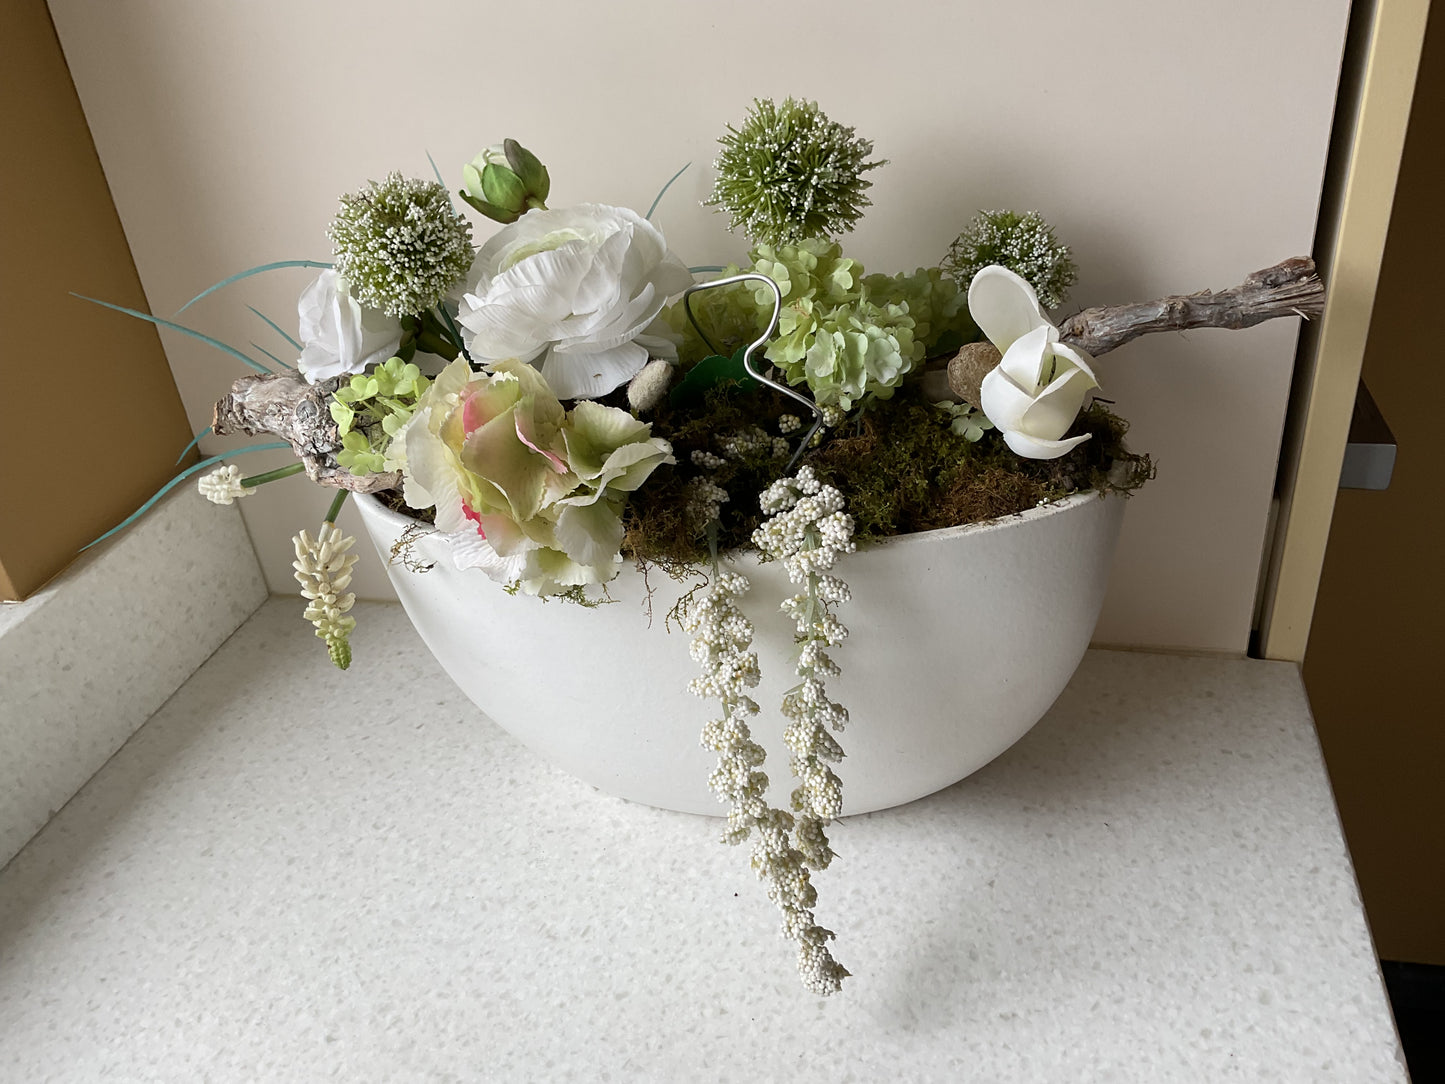 Decoratiepot met witte bloemen